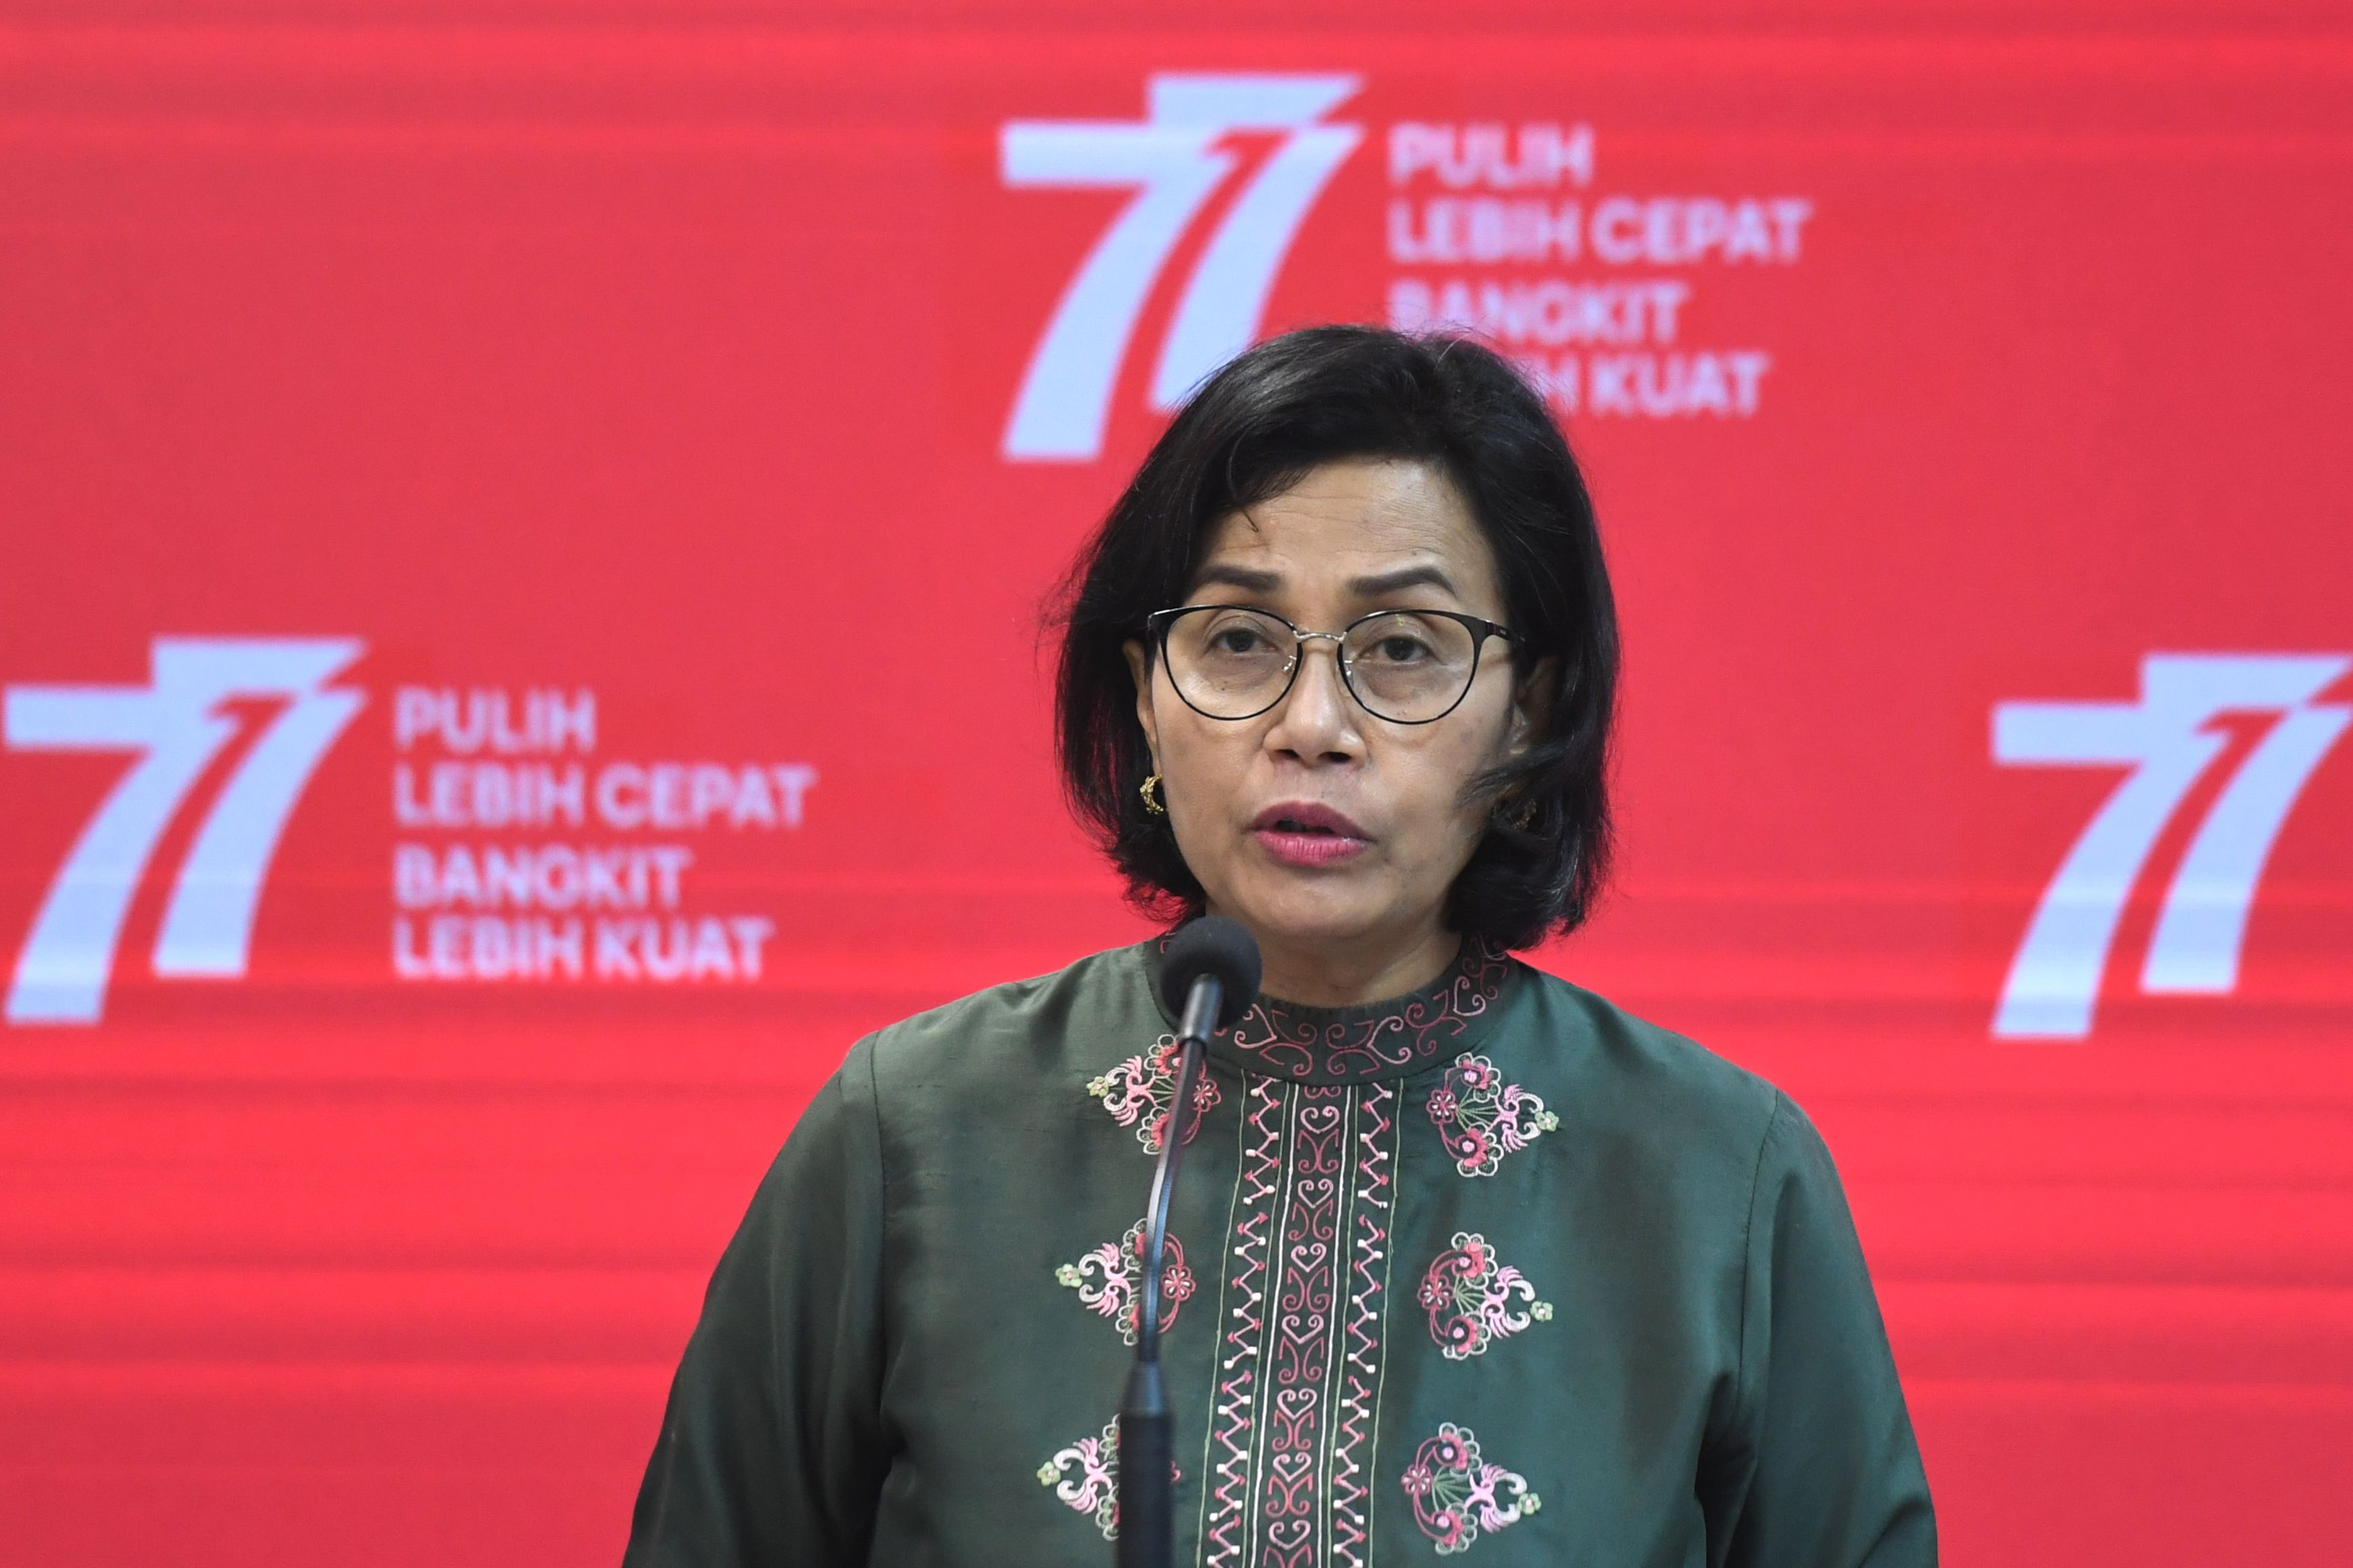 Aturan THR PNS 2023 akan dibacakan oleh Jokowi diungkapkan langsung oleh Menteri Keuangan Sri Mulyani Indrawati dalam konferensi pers APBN KiTa di Kementerian Keuangan (Kemenkeu) pada Rabu 15 Maret 2023 lalu.